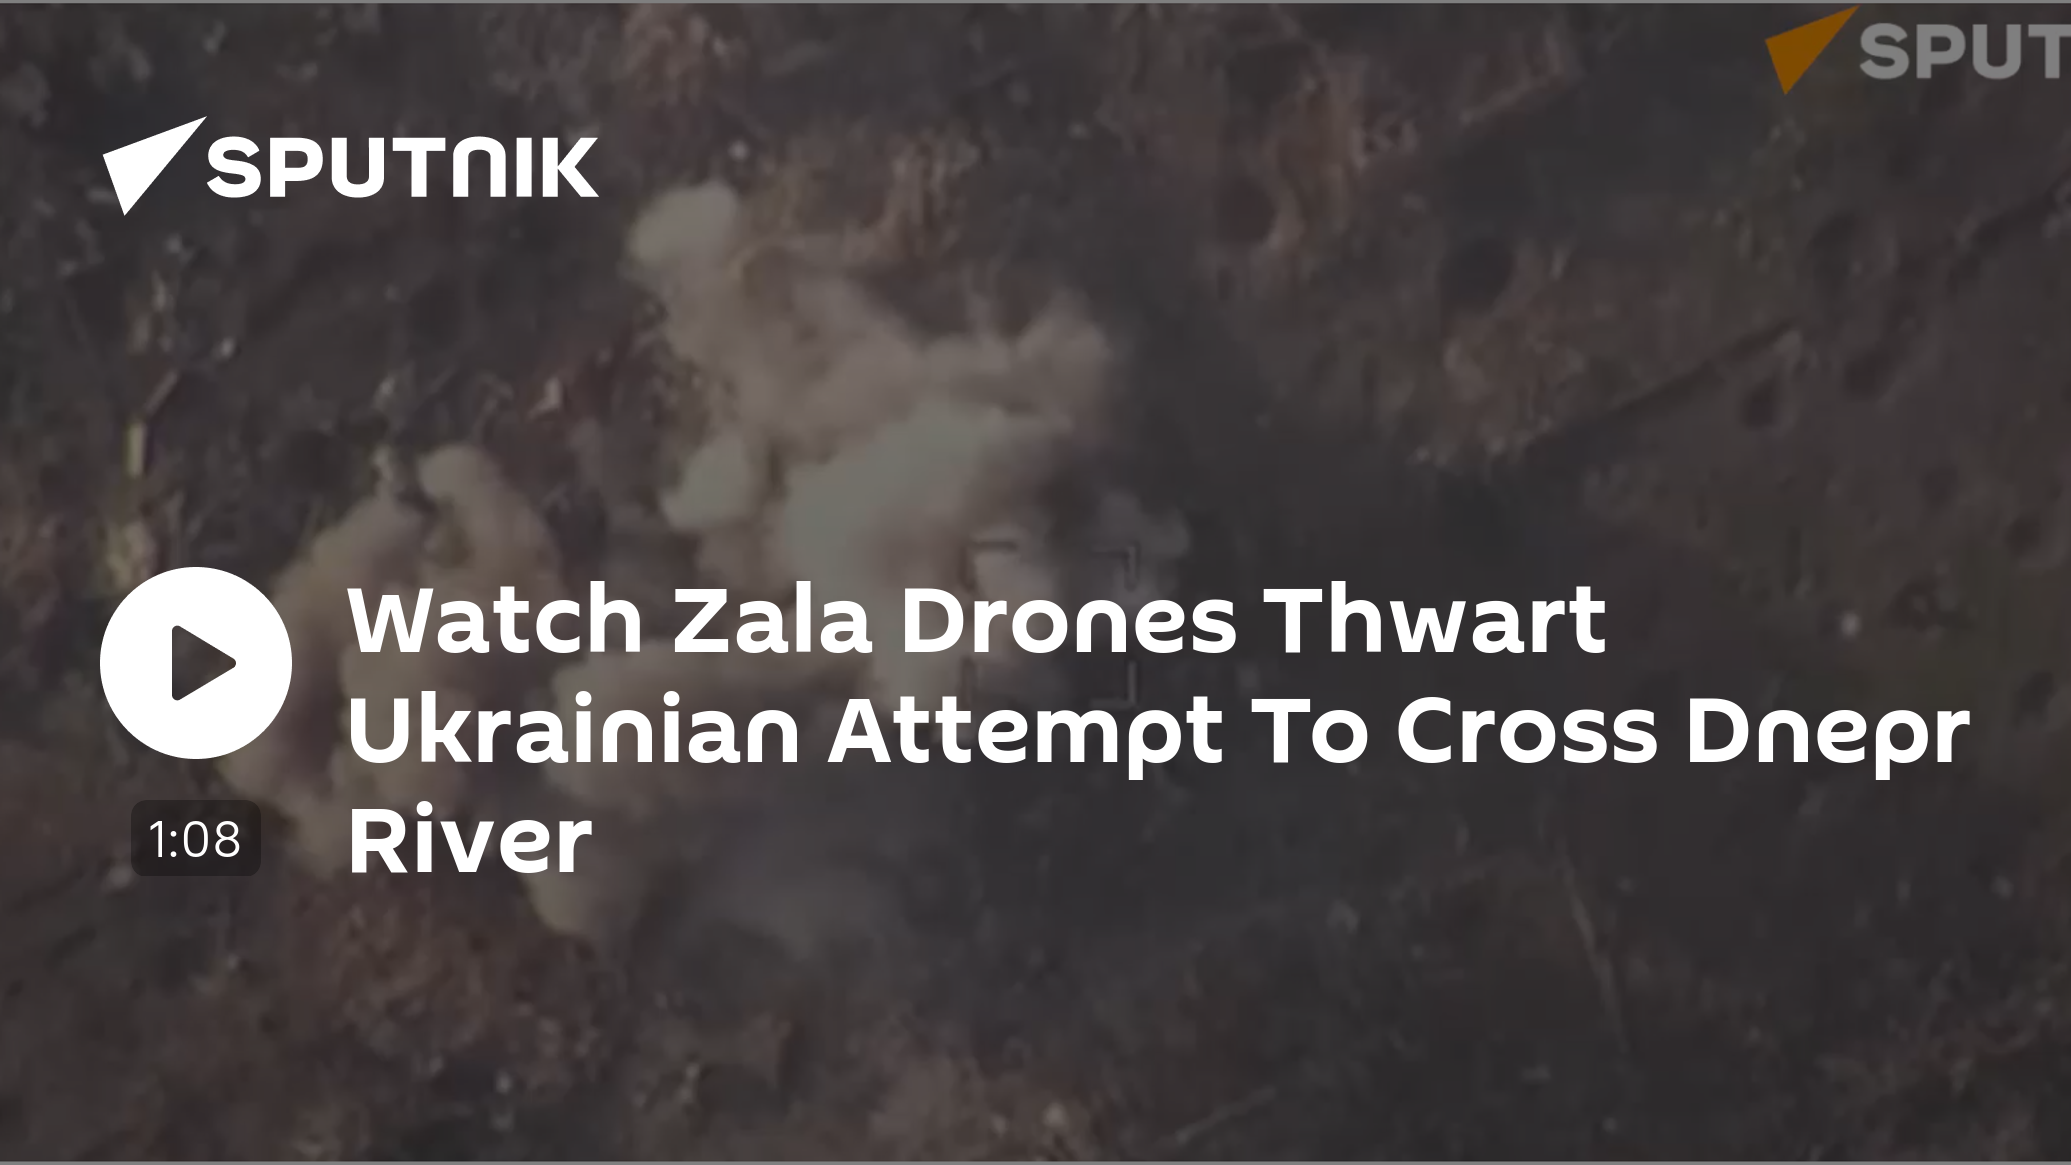 Watch Zala Drones Foiling Ukrainian Attempt to Cross Dnepr [Video]